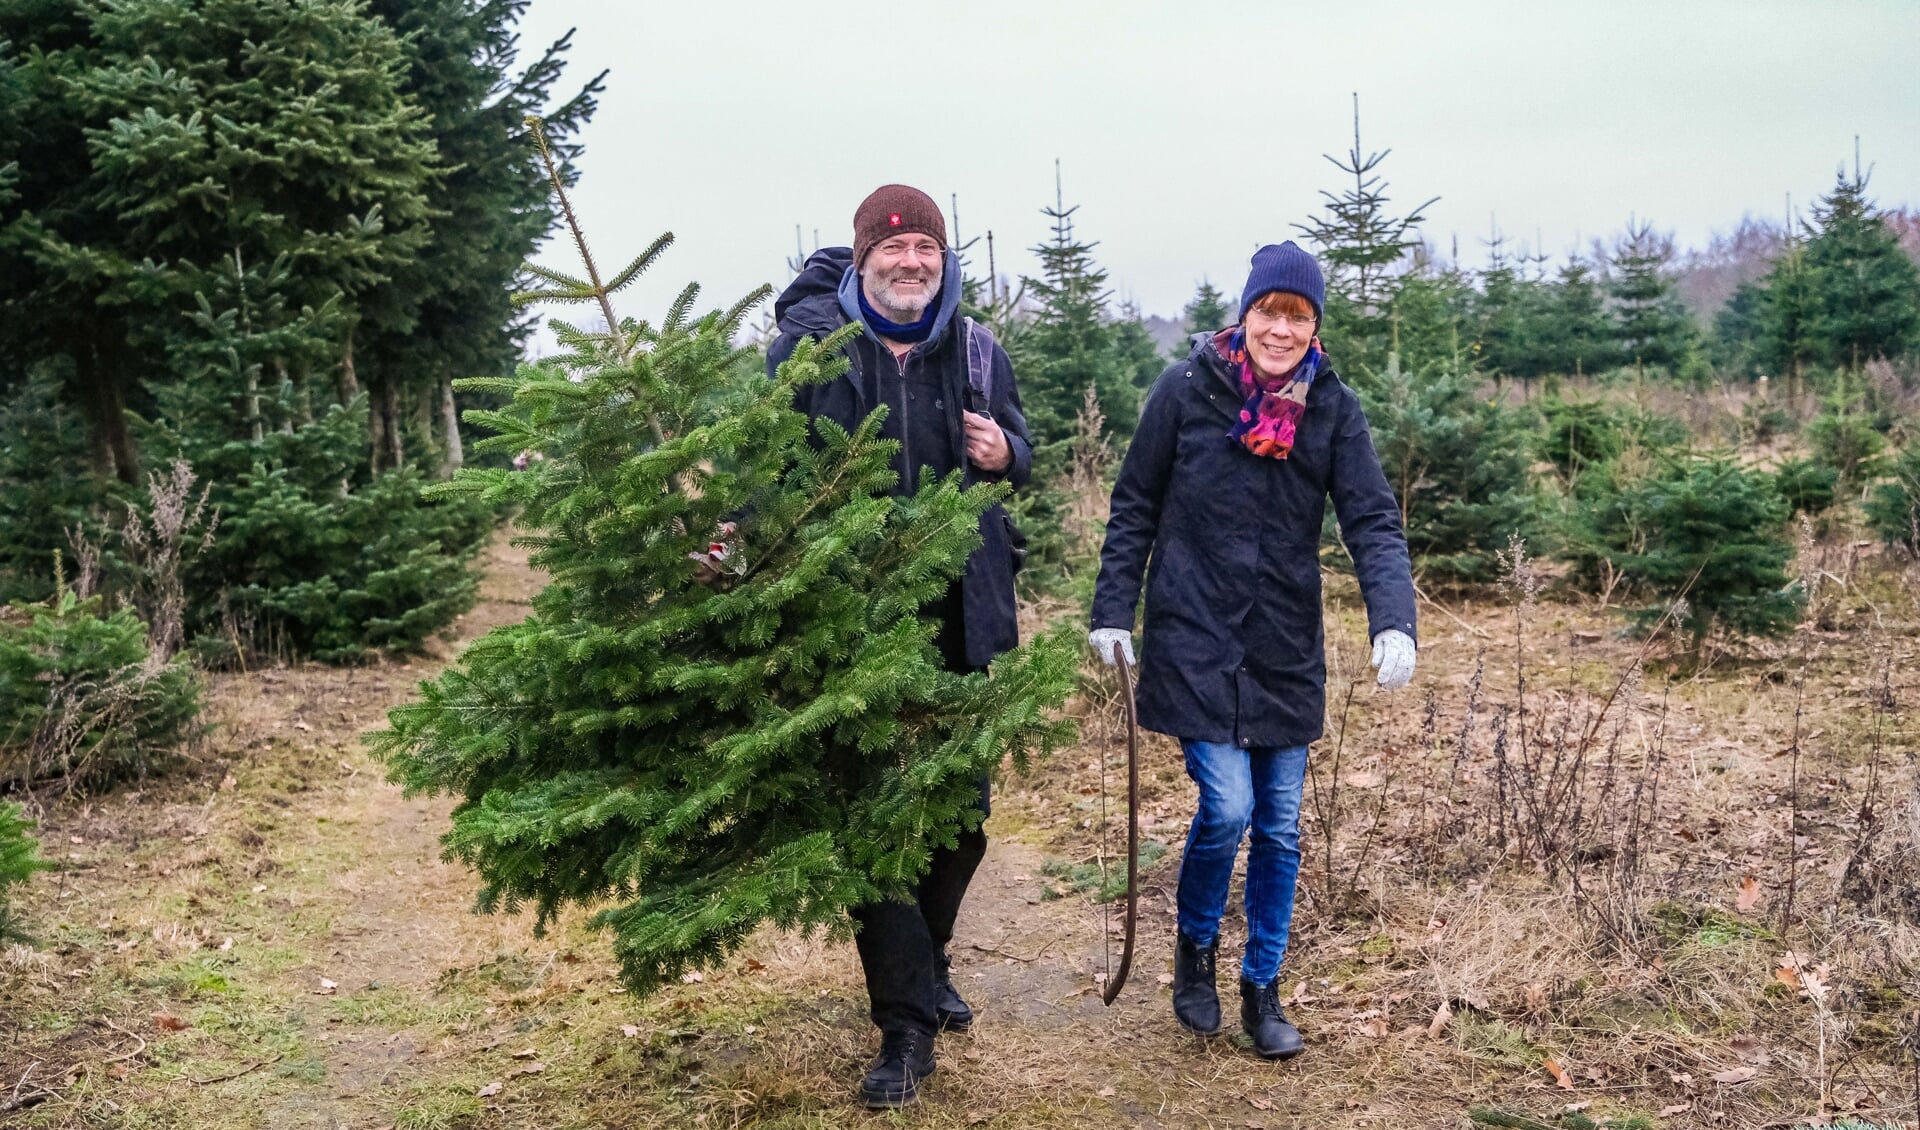 Jürgen Stücke og Kyra Golibrzuch var kommet hele vejen fra Tønning for at fælde juletræ, fordi deres lokale juletræshandler ikke holdt åbent i år. De var glade for det juletræ, de fik med hjem. 